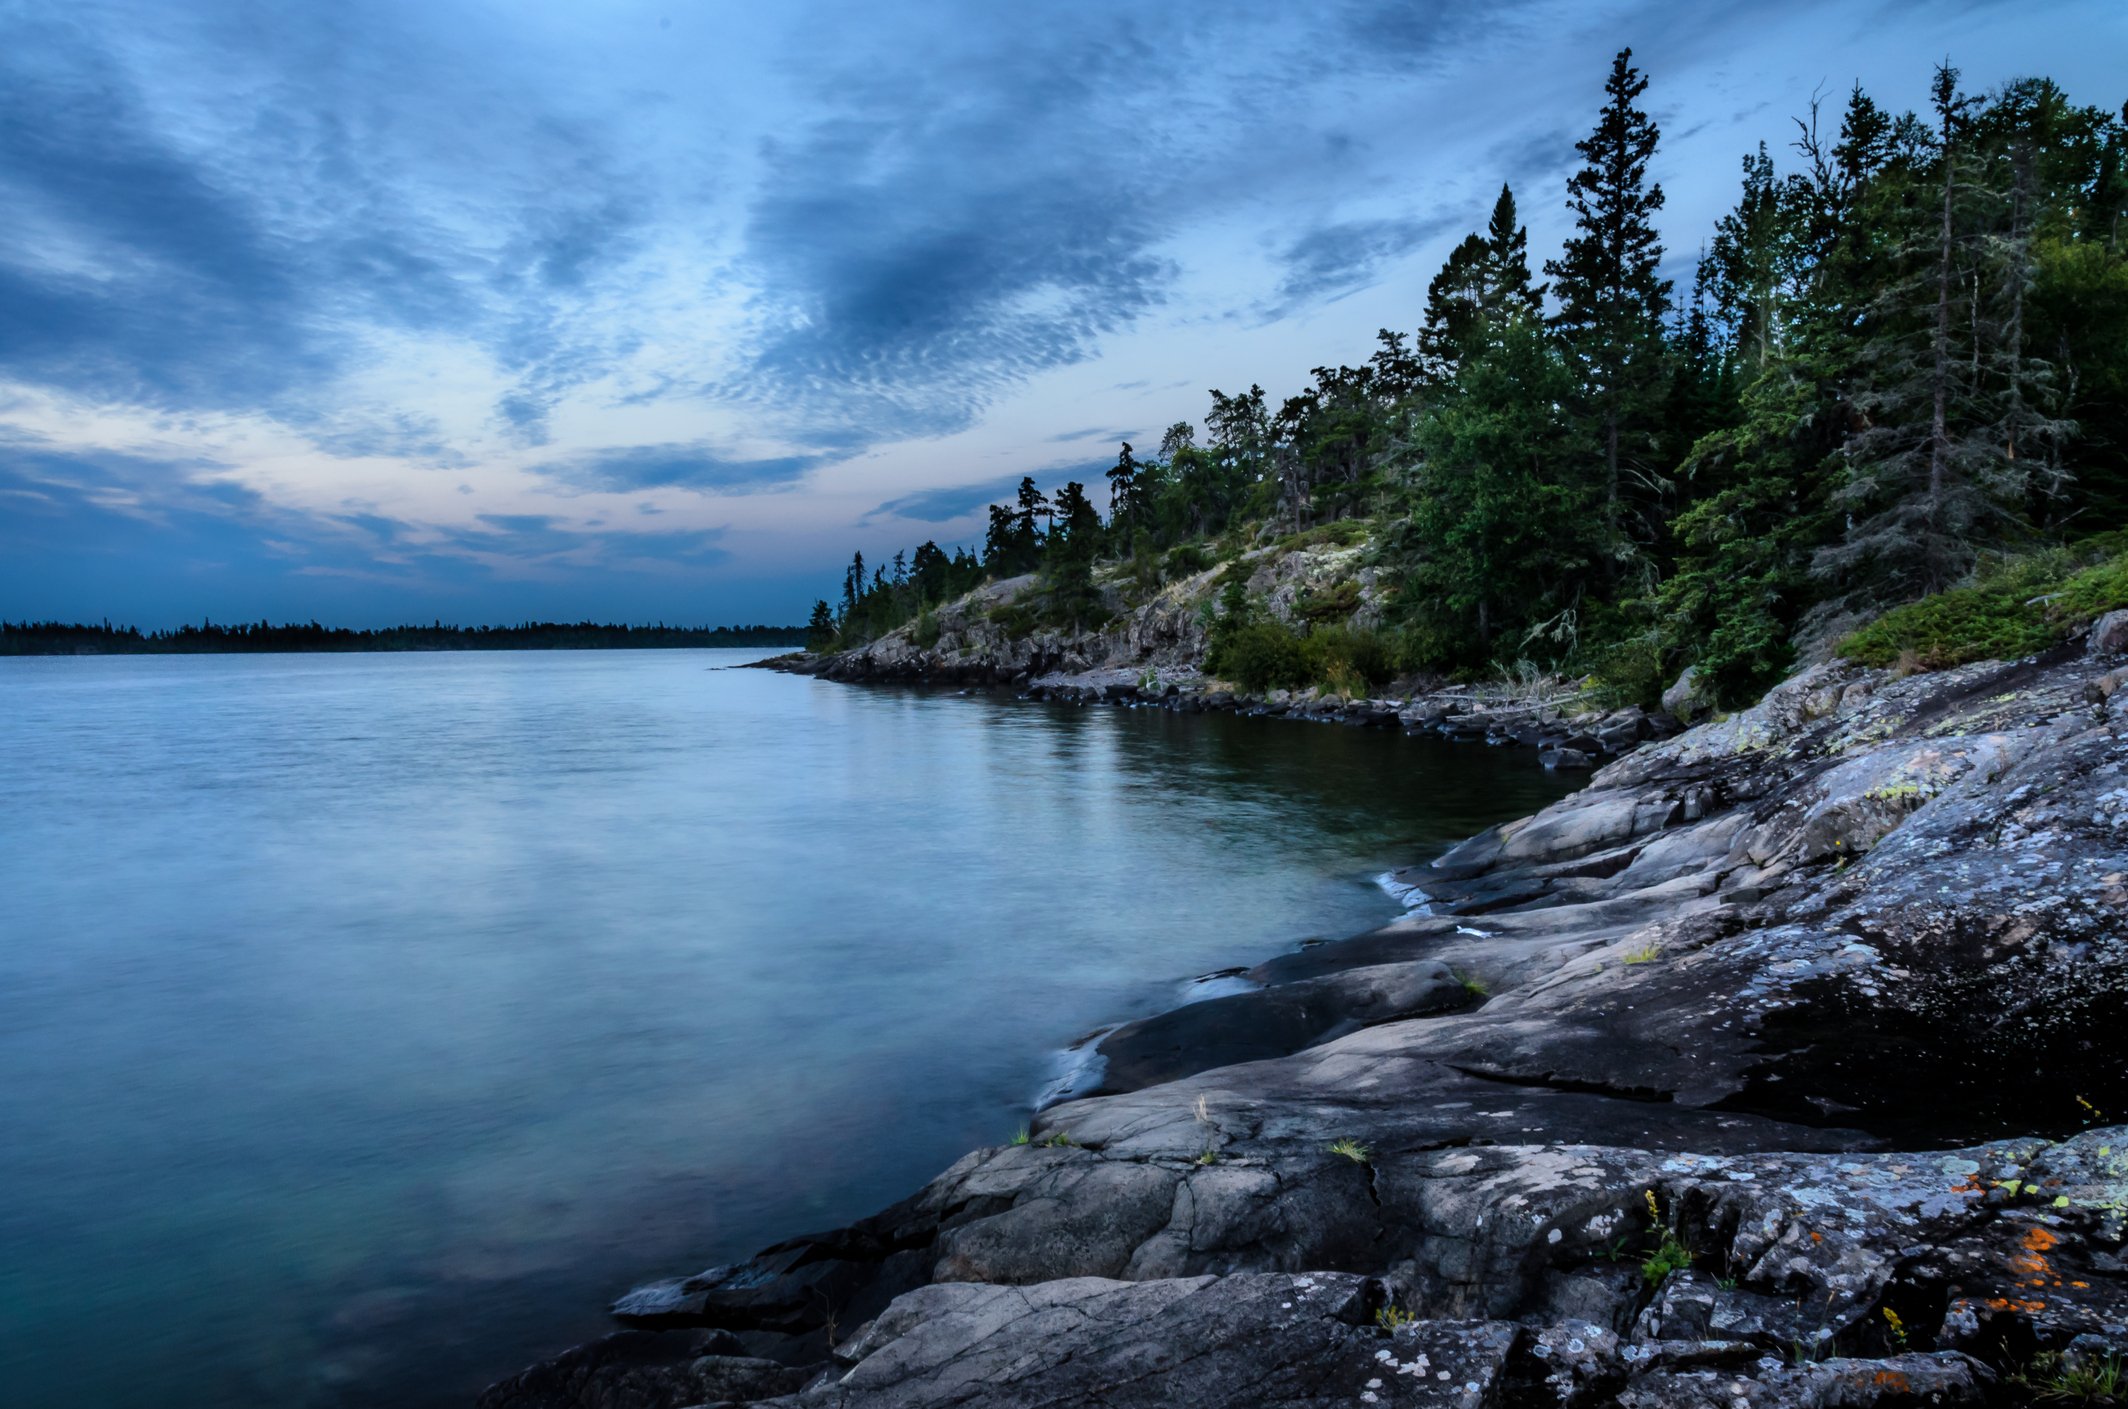 Самое восточное из великих озер 7. Верхнее озеро (Lake Superior). Канада. Озеро сьюпериор Канада. Великие американские озёра верхнее Гурон Мичиган Эри Онтарио. Озеро Онтарио Северная Америка.